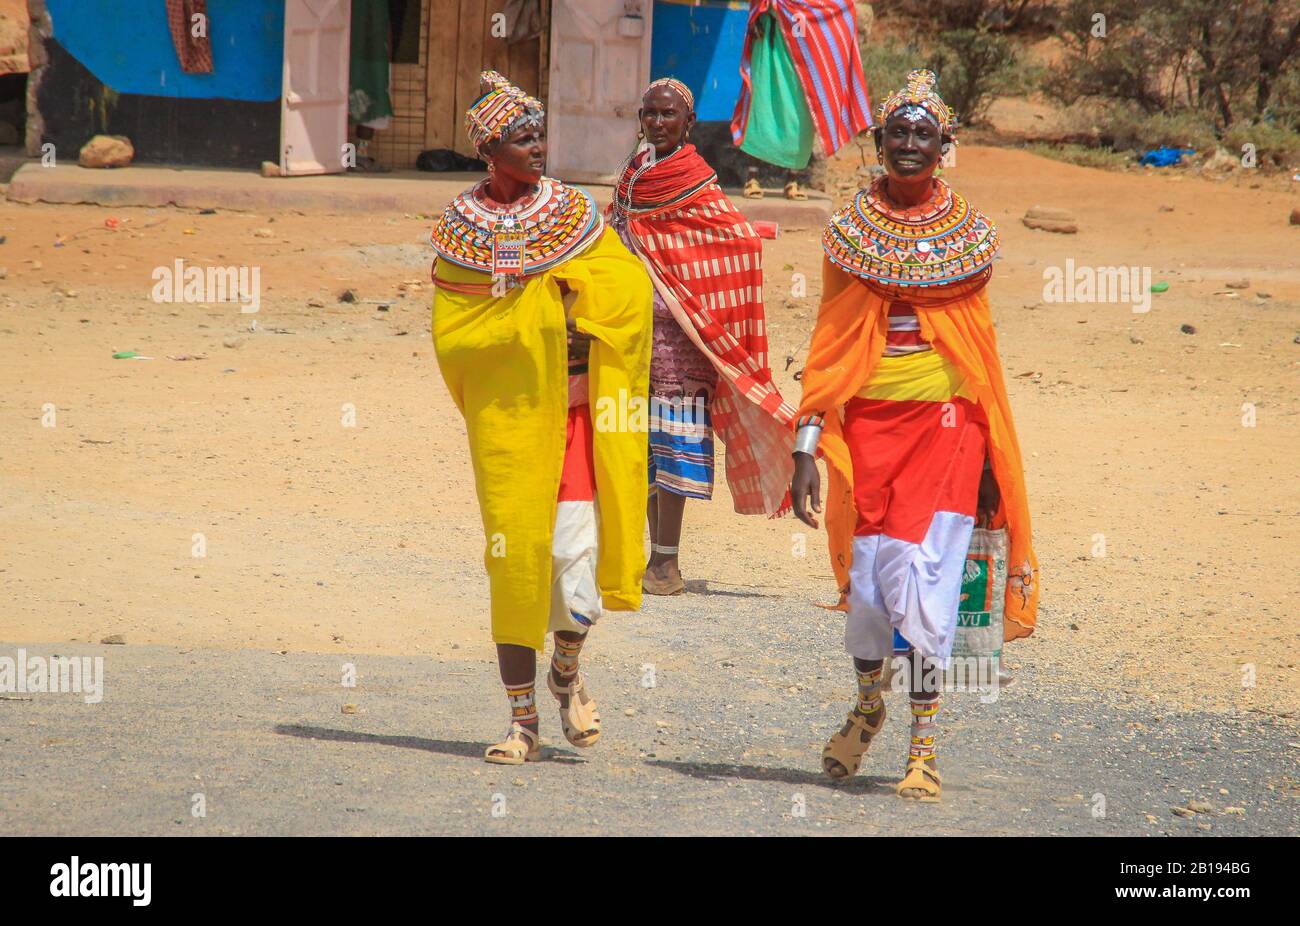 Marsabit, Kenya - 16 gennaio 2015: Donne africane della tribù dei Samburu (simili alla tribù dei Masai) in gioiellerie nazionali. Foto Stock